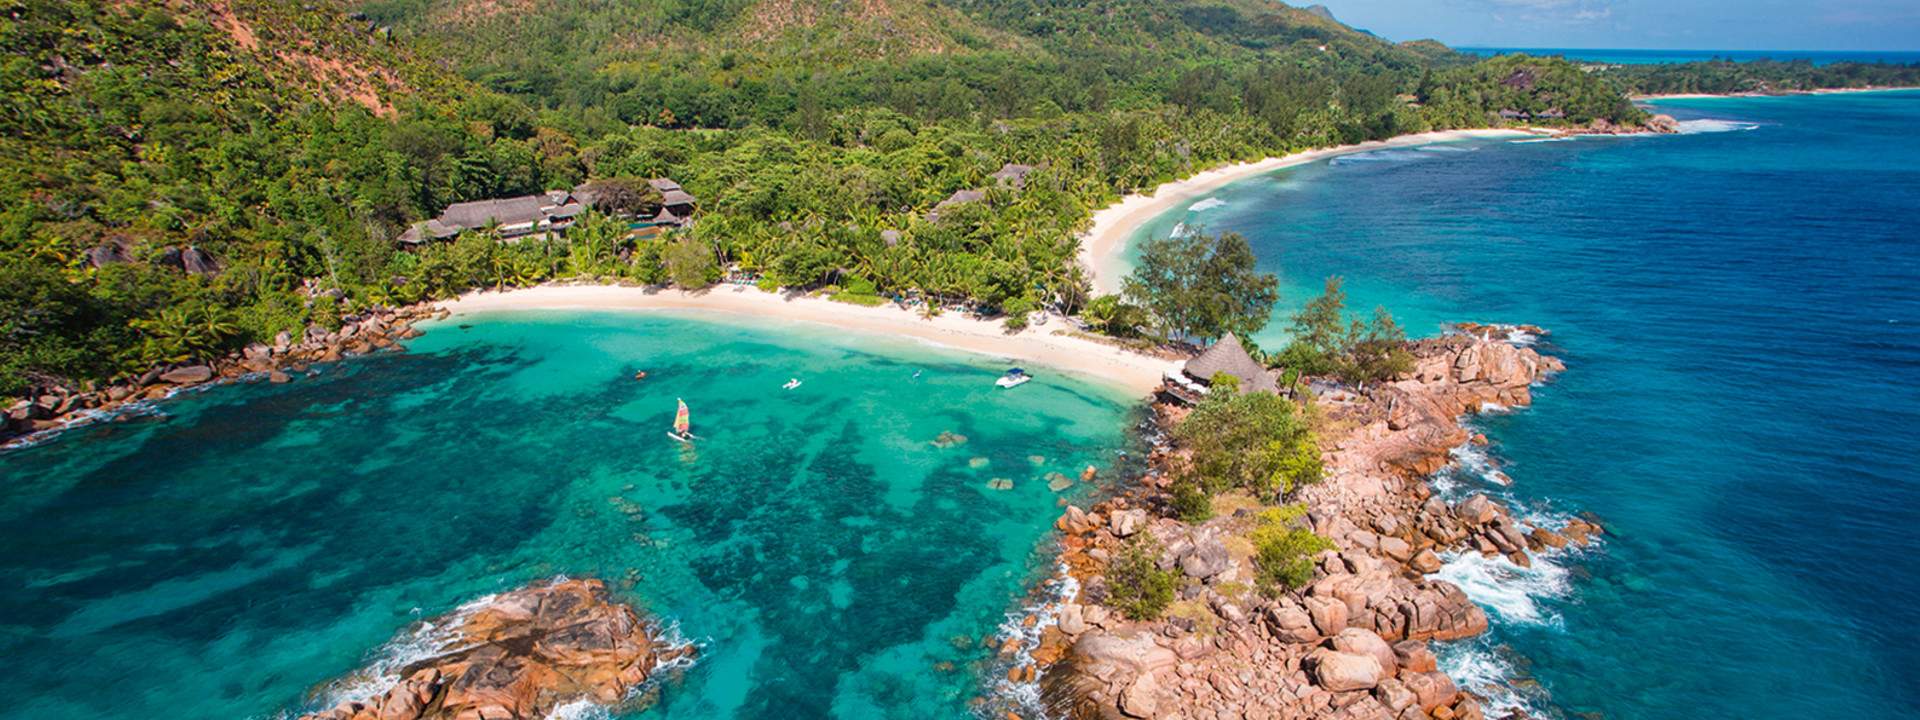 Dalle foreste pluviali ai fondali marini, esplorate le Seychelles